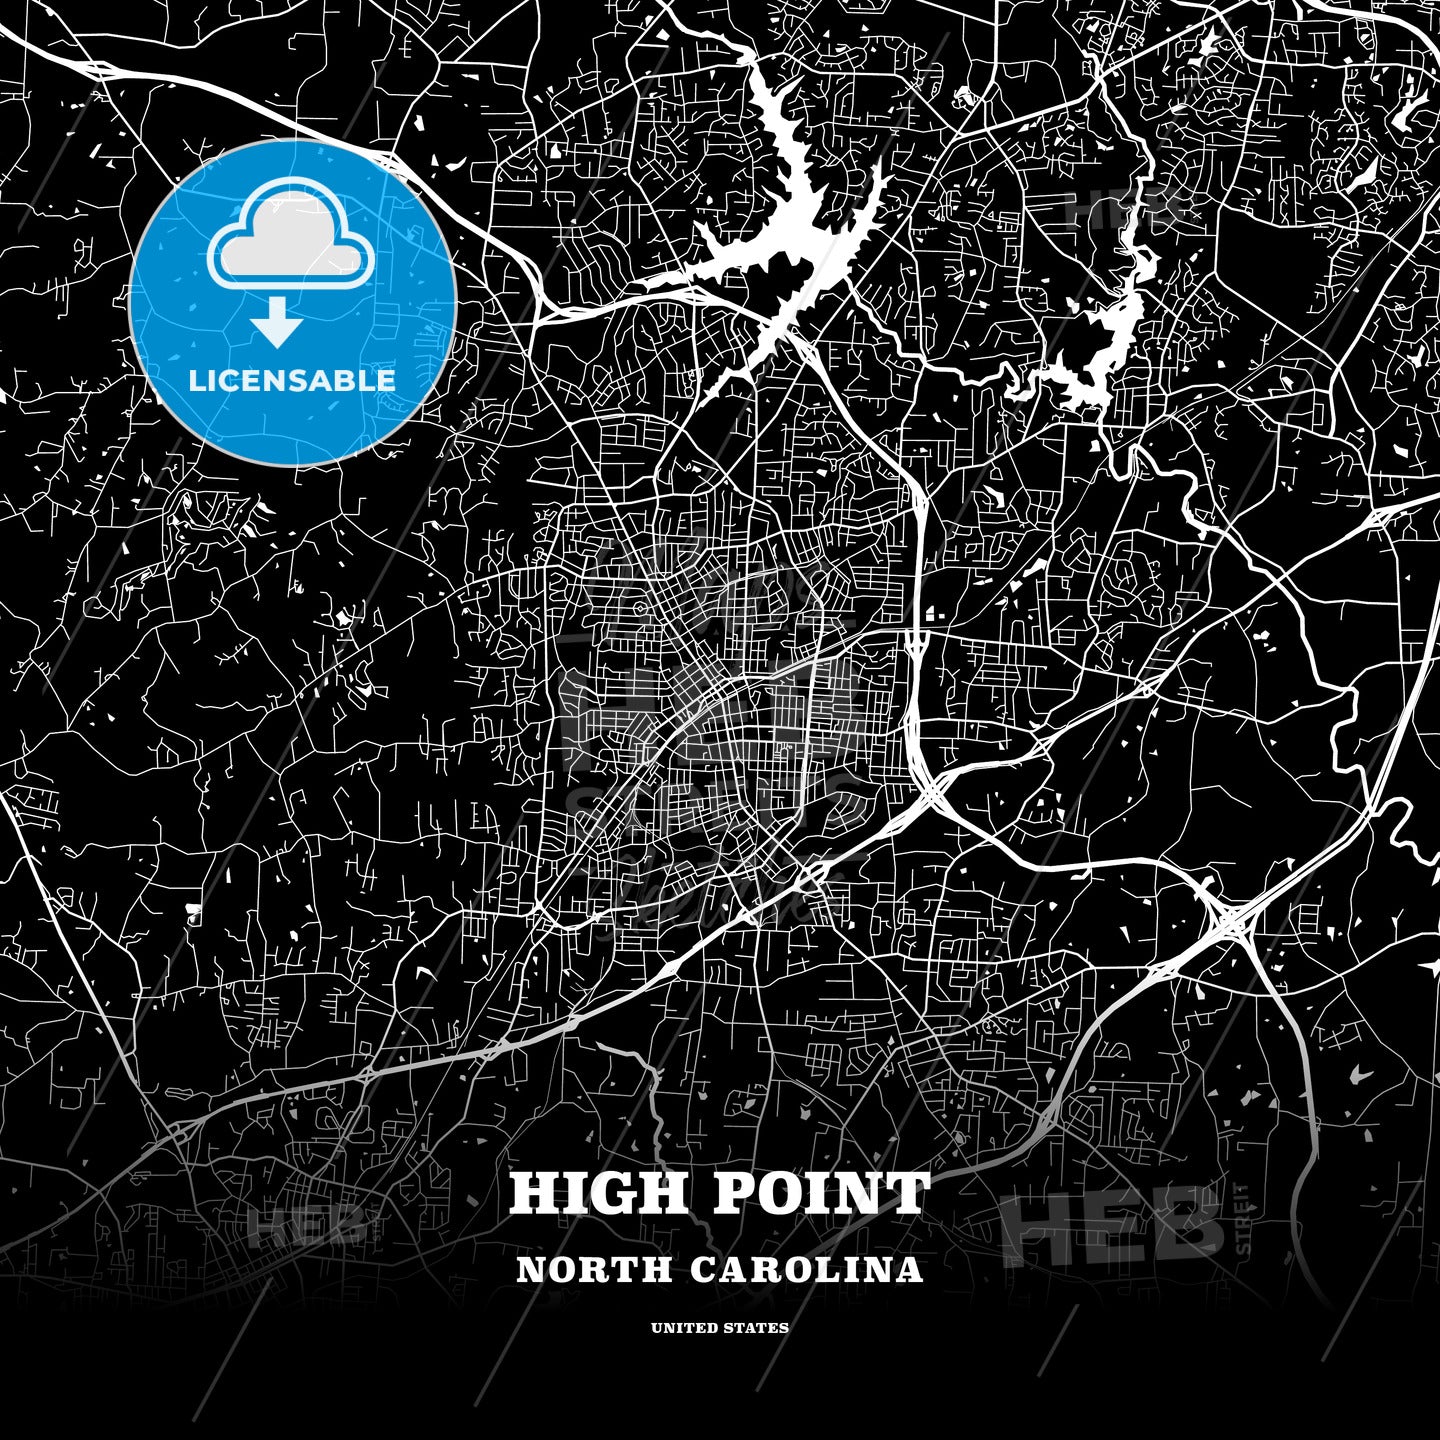 High Point, North Carolina, USA map